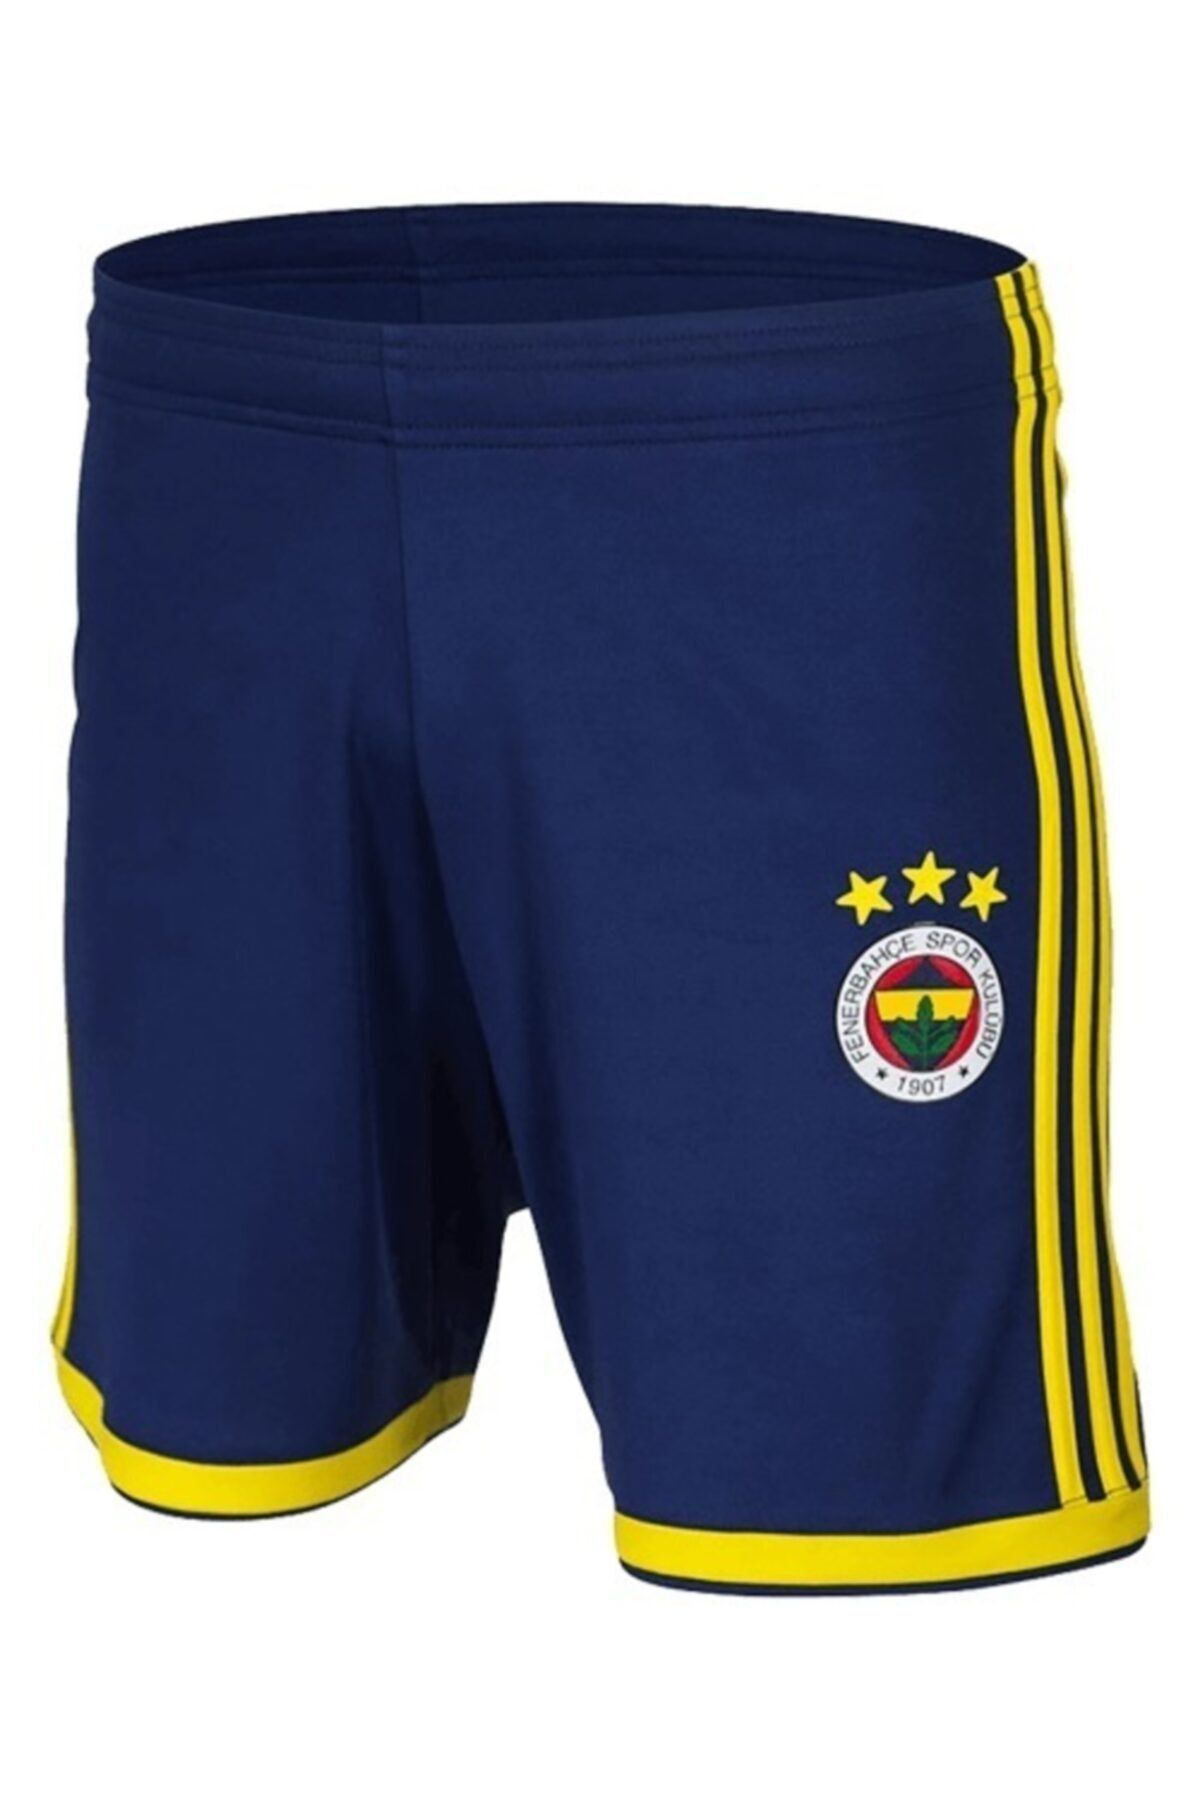 Fenerbahçe Unisex Fenerbahçe Lacivert Futbol Şort